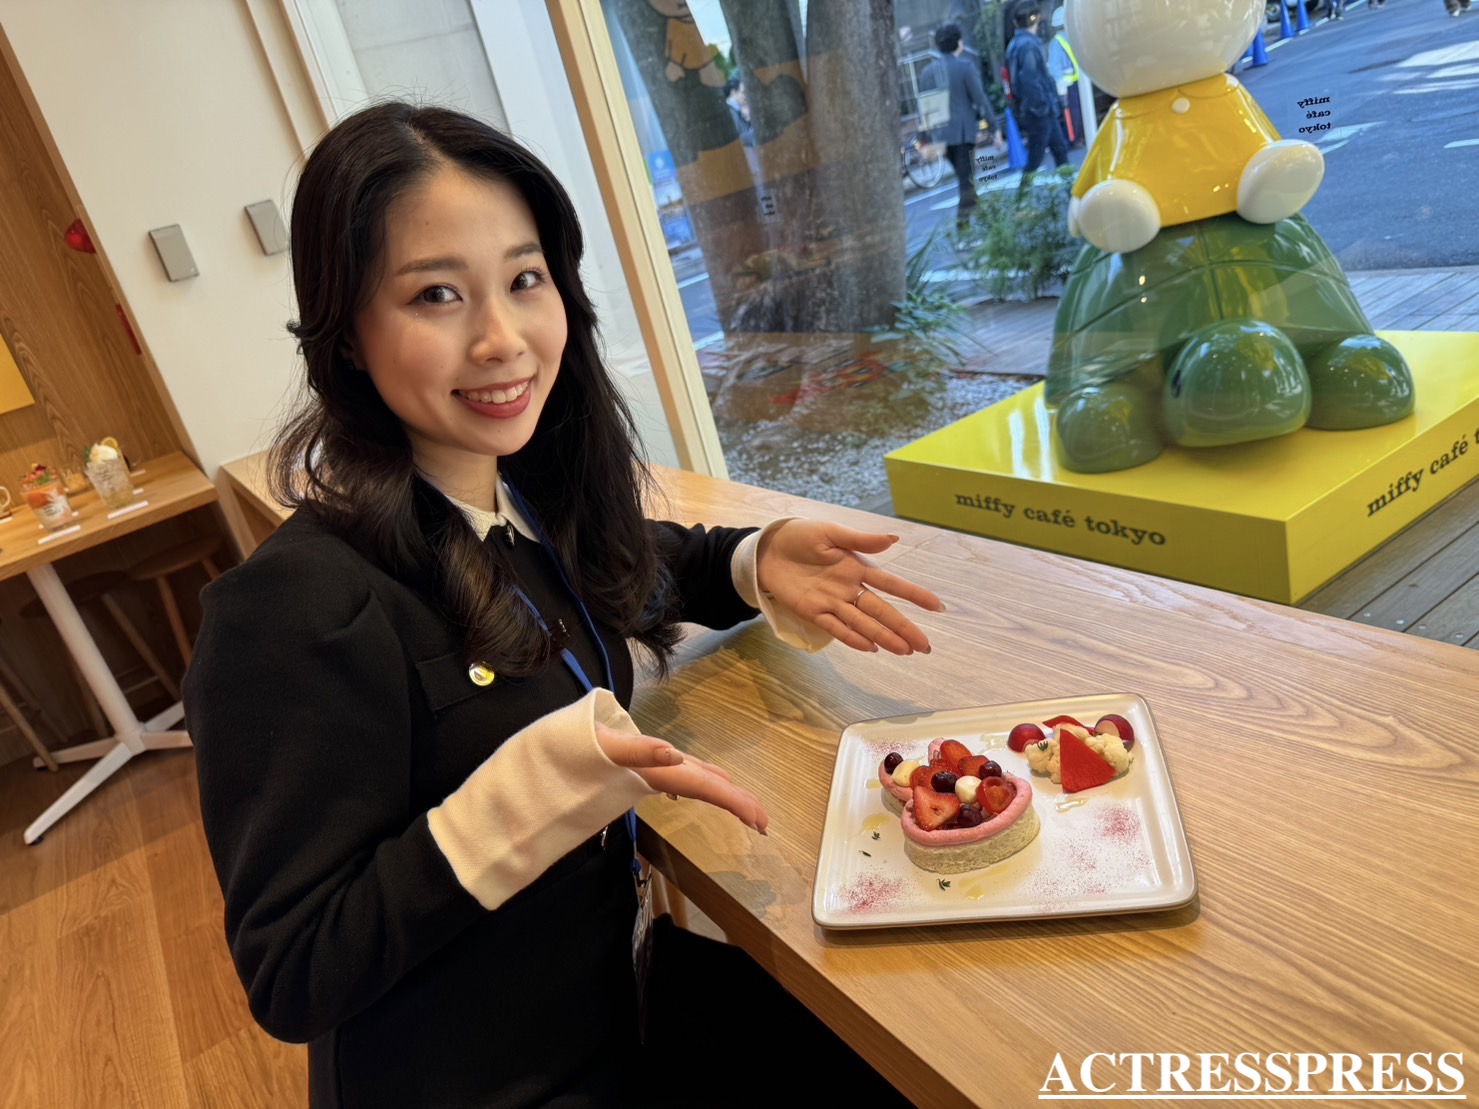 國近奈旺（ACTRESS PRESS REPORTER（アクトレスプレス リポーター）in miffy café tokyo（ミッフィーカフェ トーキョー）​​代官山駅